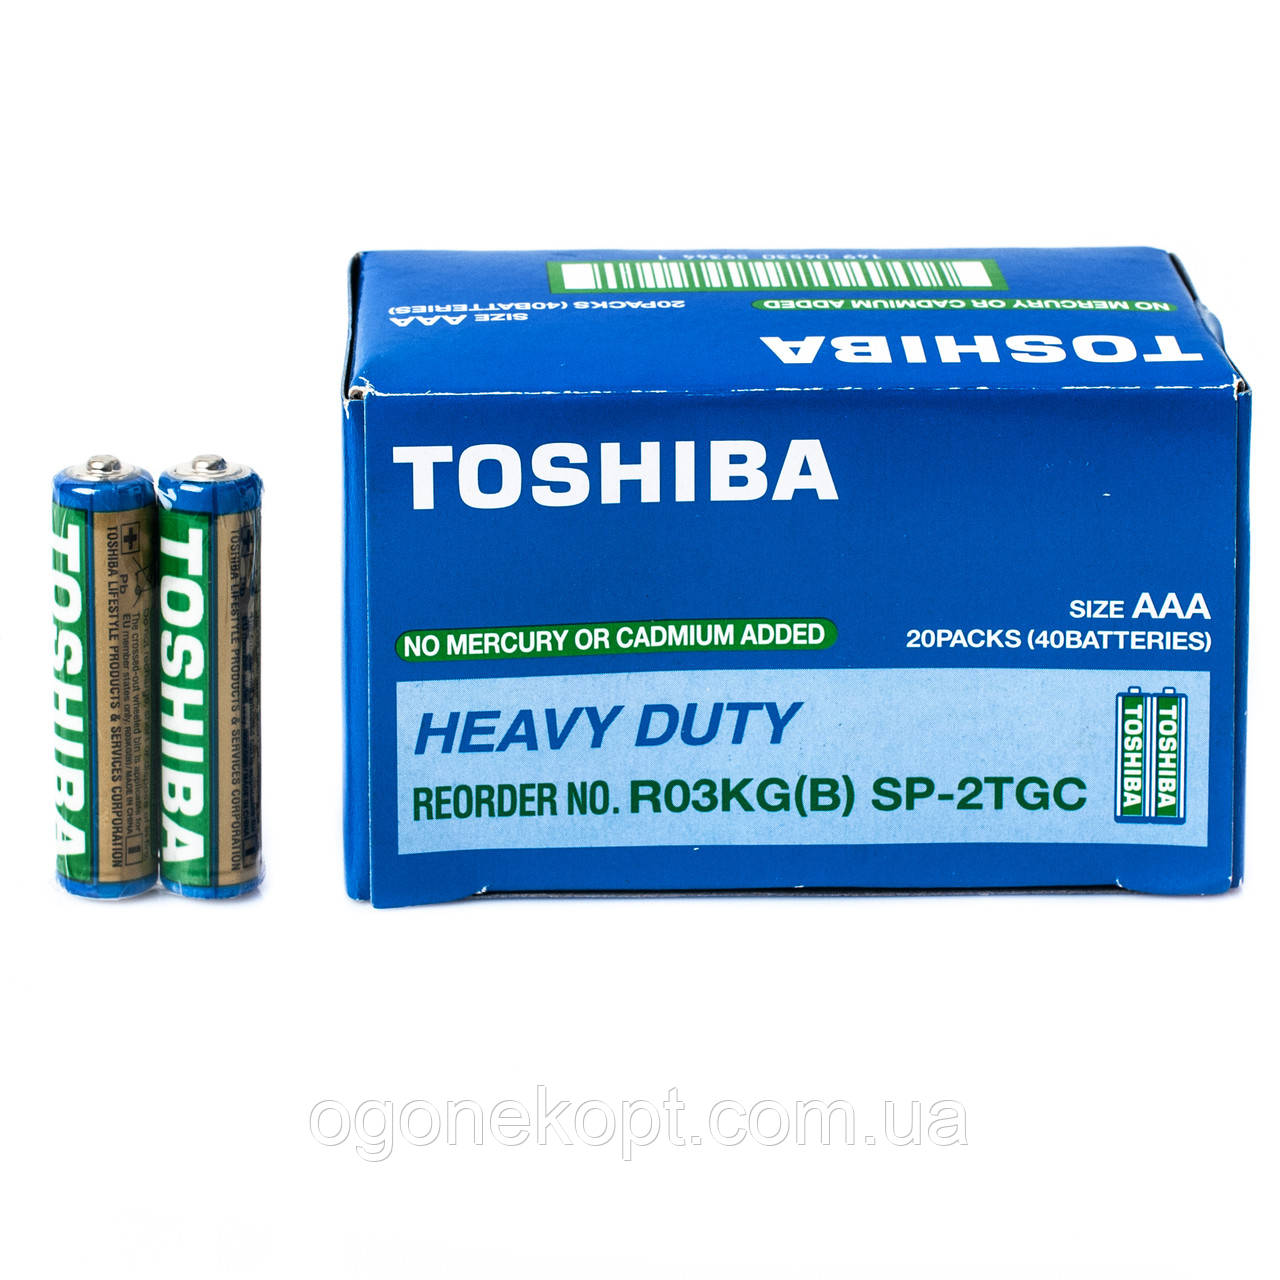 Батарейки Toshiba ААА R03 1.5V Heavy Duty